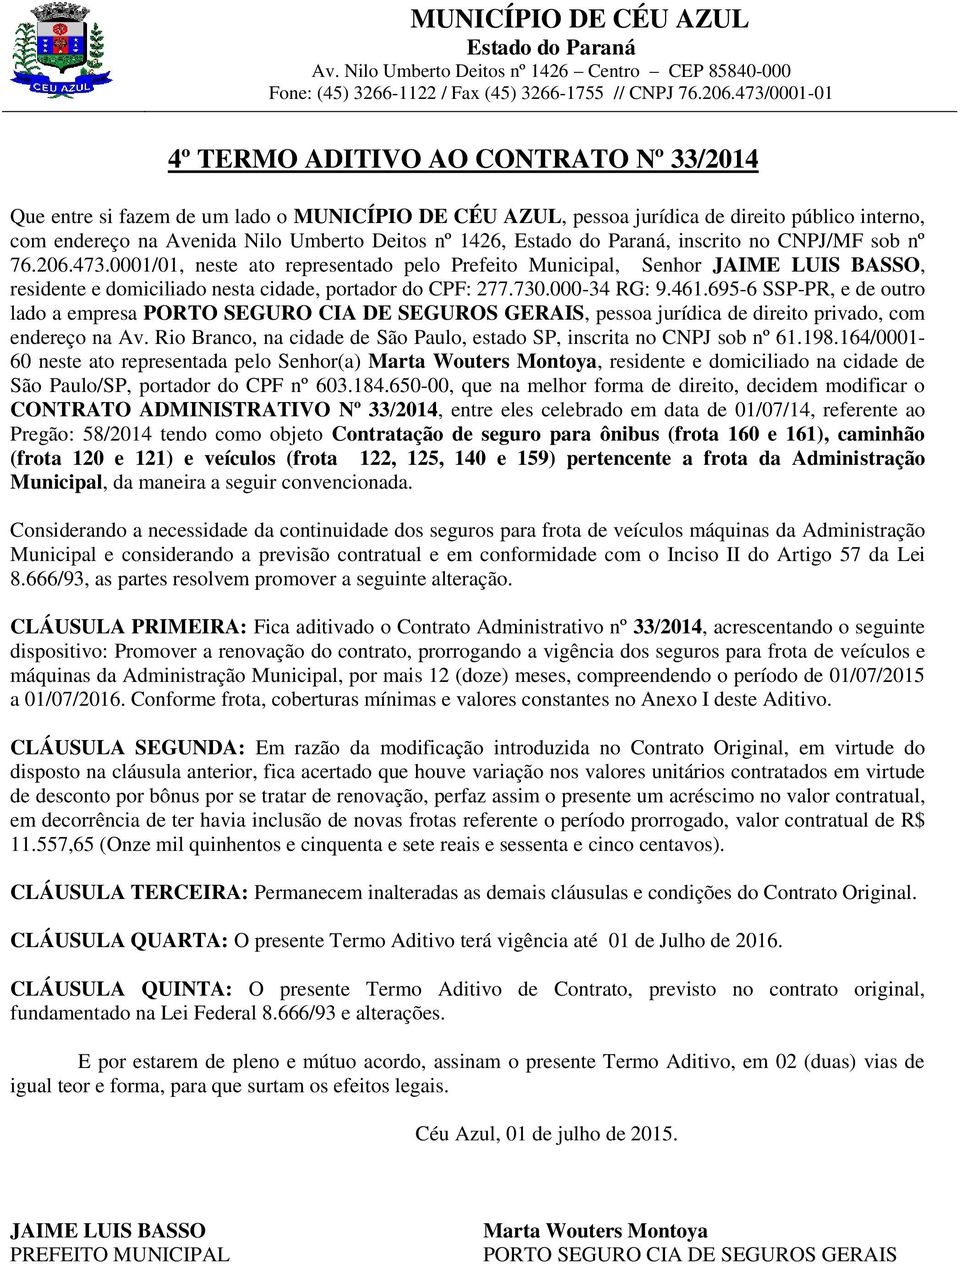 1426, Estado do Paraná, inscrito no CNPJ/MF sob nº 76.206.473.